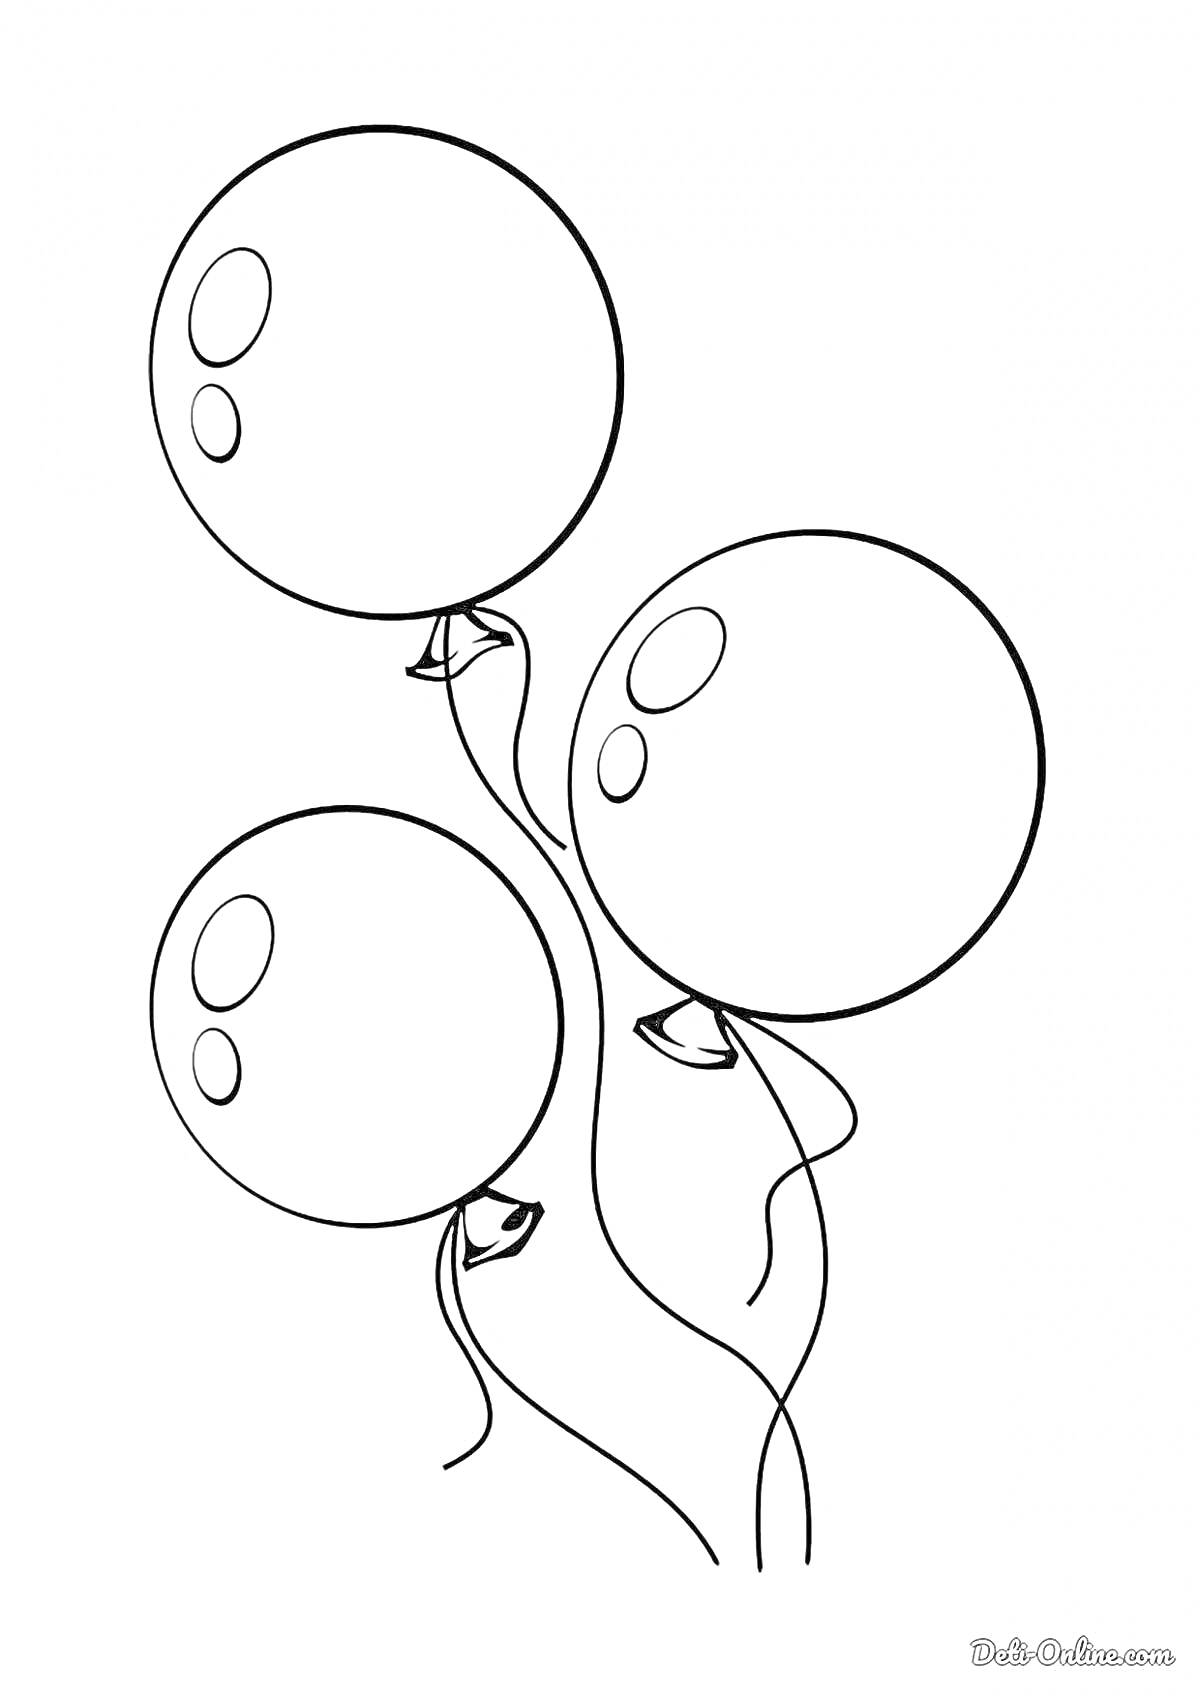 Три воздушных шарика с отражениями и ленточками